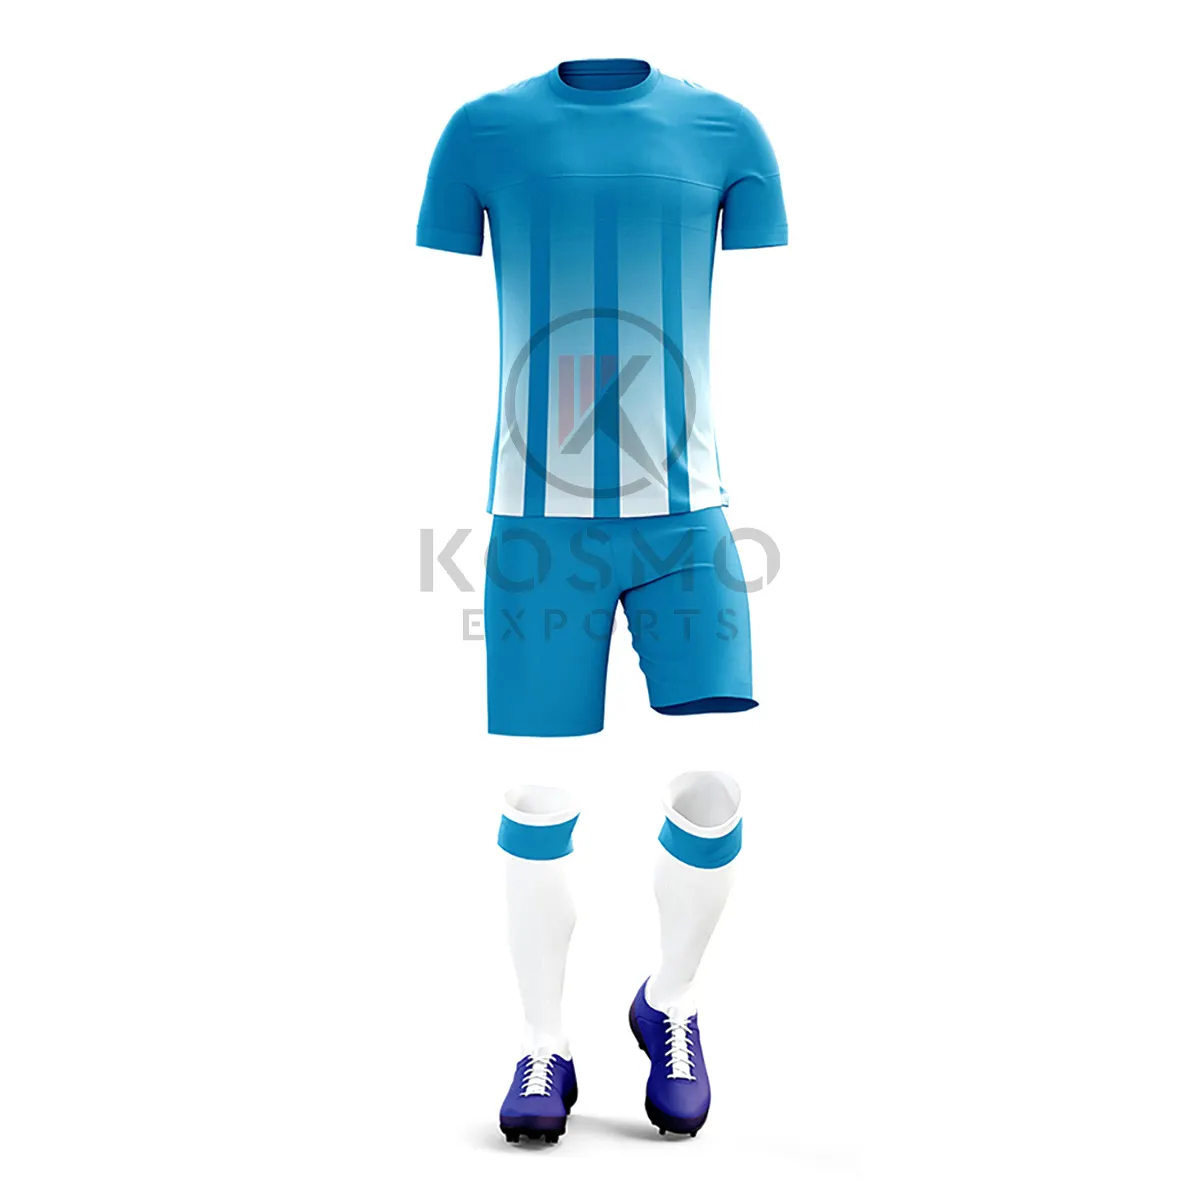 Uniforme de fútbol Deportivo personalizado, conjunto completo de sublimación, camiseta de fútbol con impresión Digital, venta al por mayor